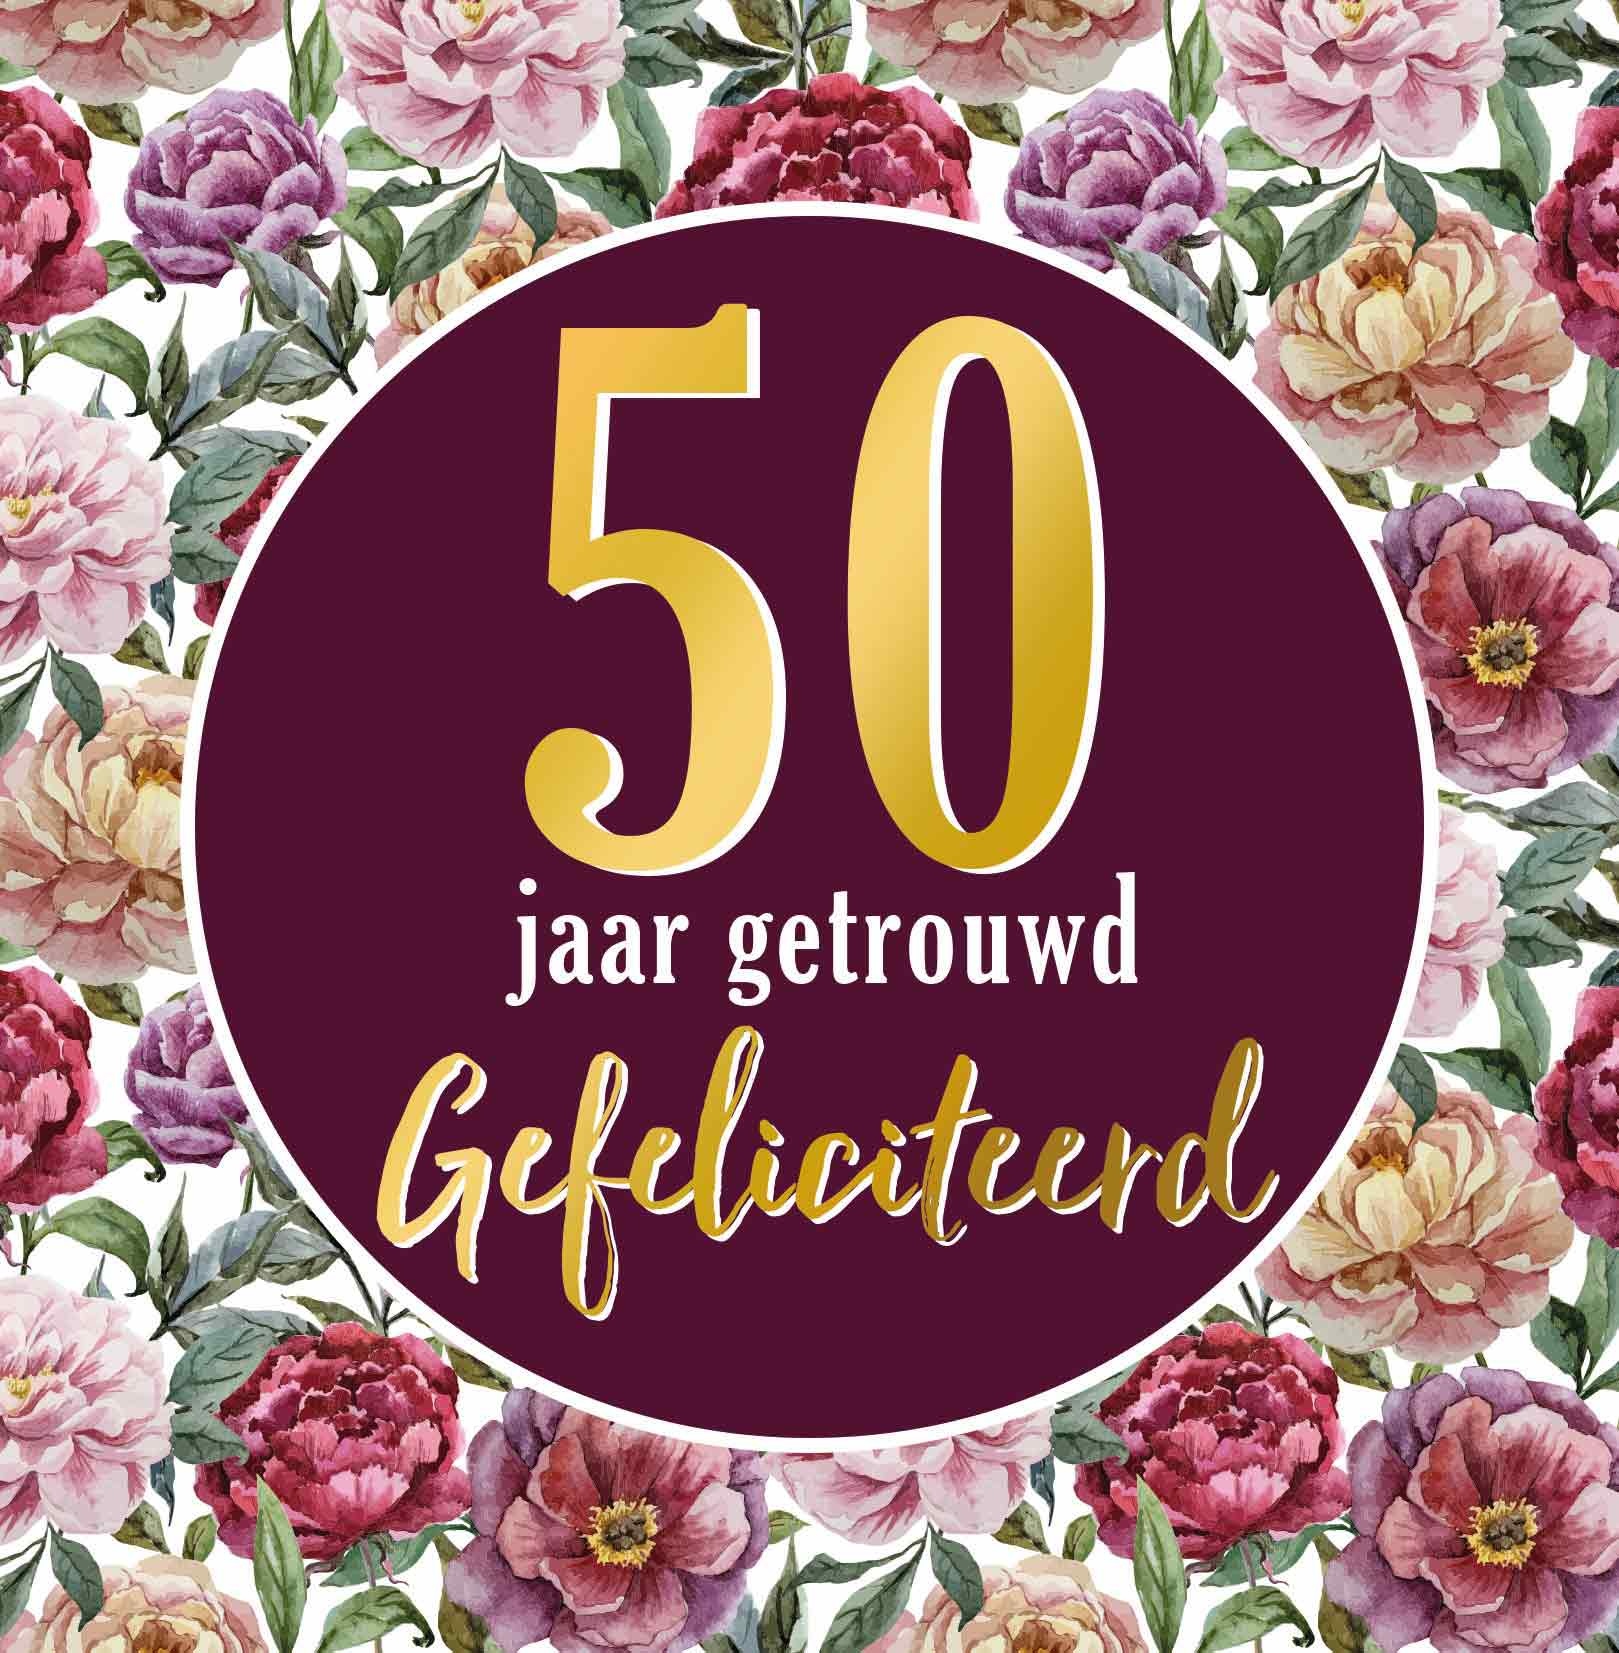 Glans Agnes Gray embargo 50 jaar getrouwd - Snelwenskaart.nl